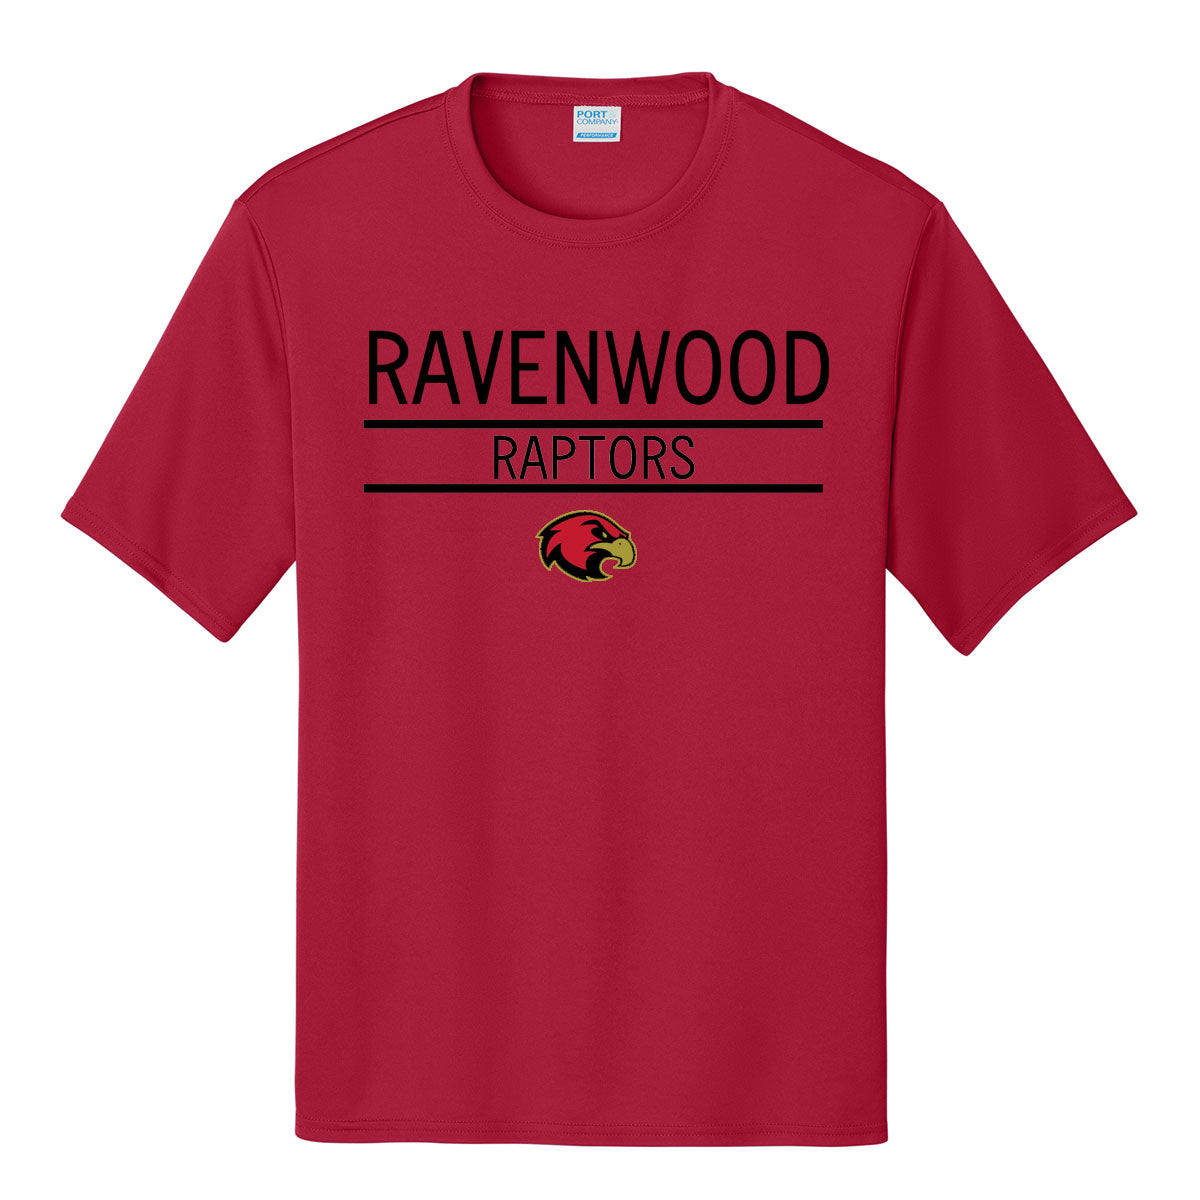 ADULT Ravenwood Raptors Performance Tee